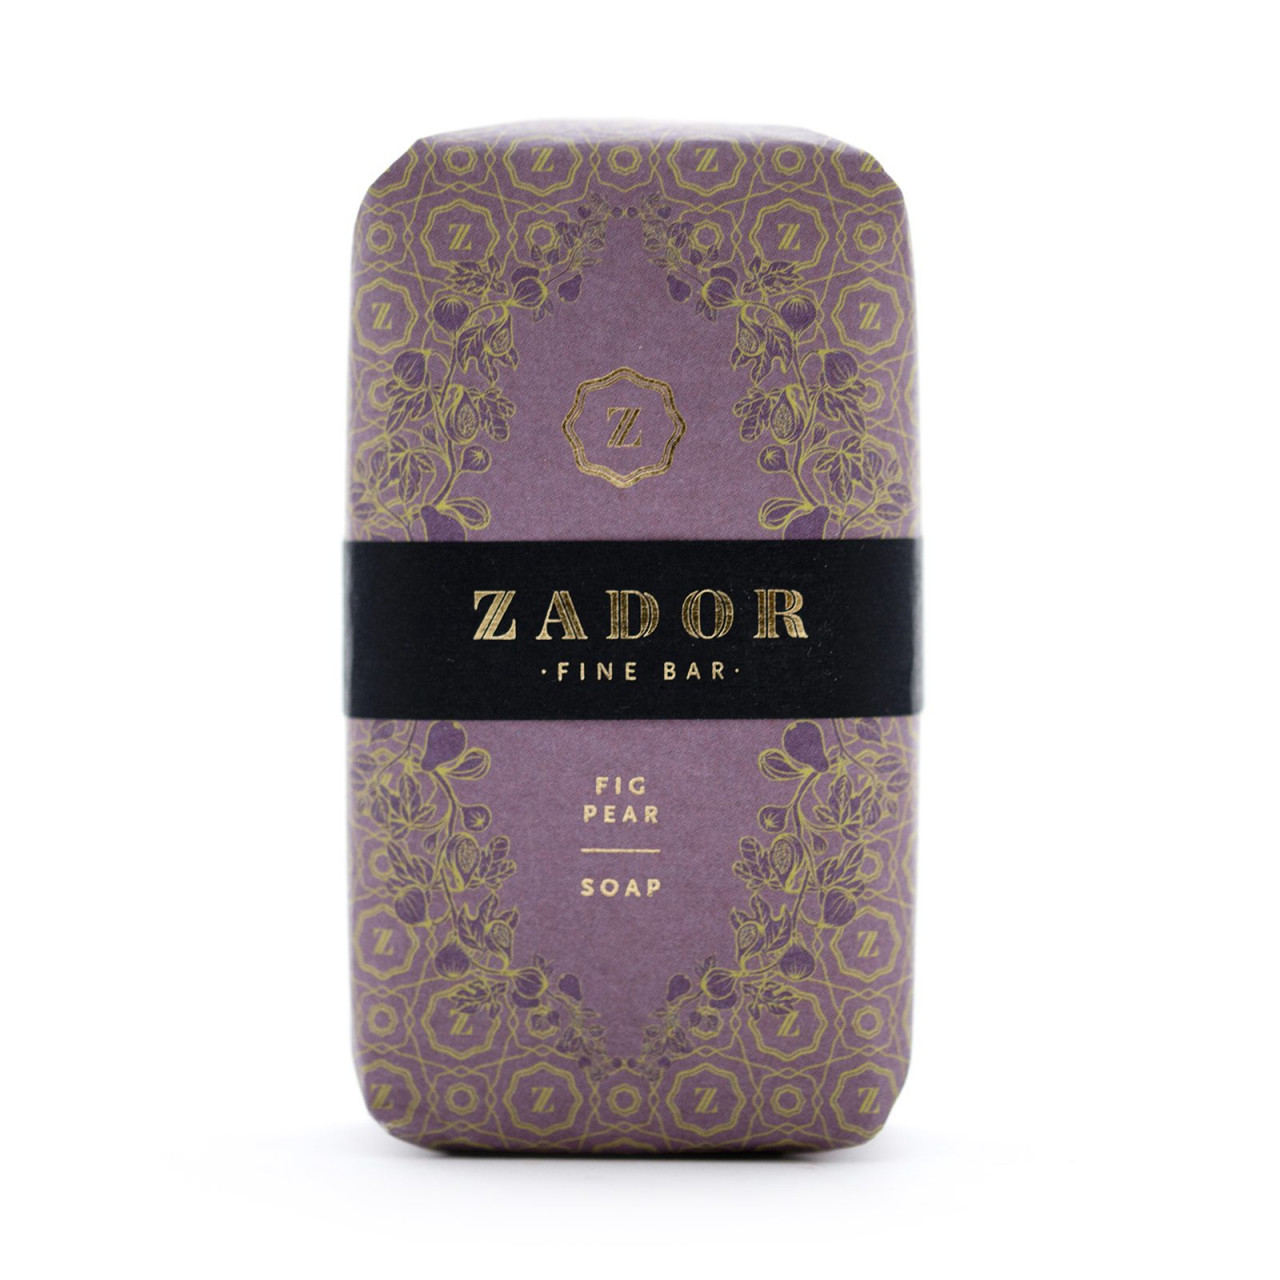 Zador Fig-Pear Soap